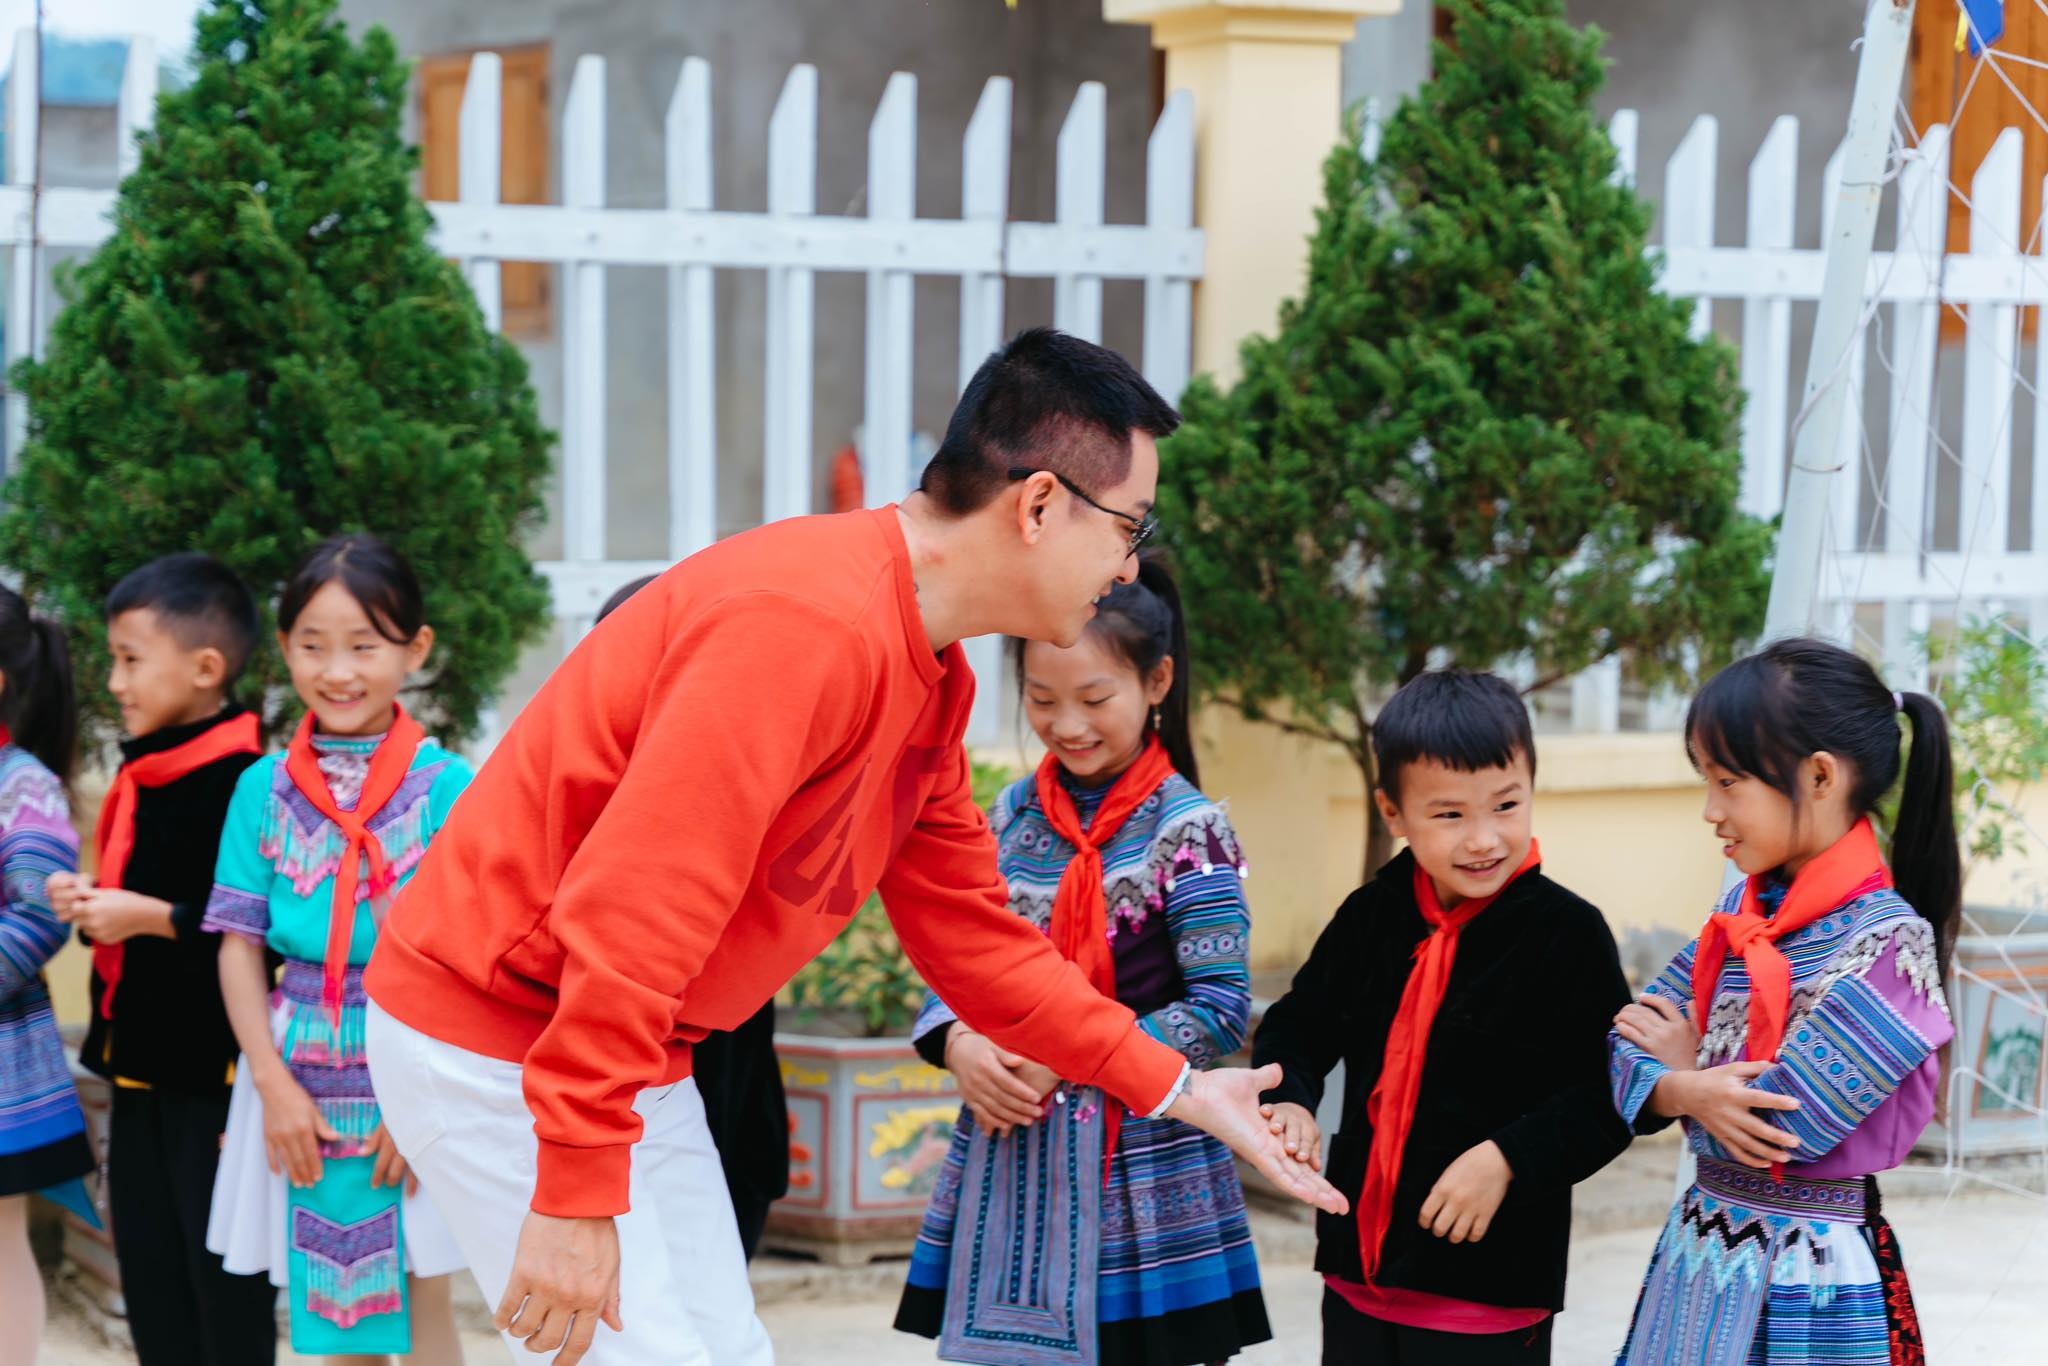 Ca sĩ Tuấn Hưng xây nhà cho trẻ em khó khăn ở Lào Cai - 2